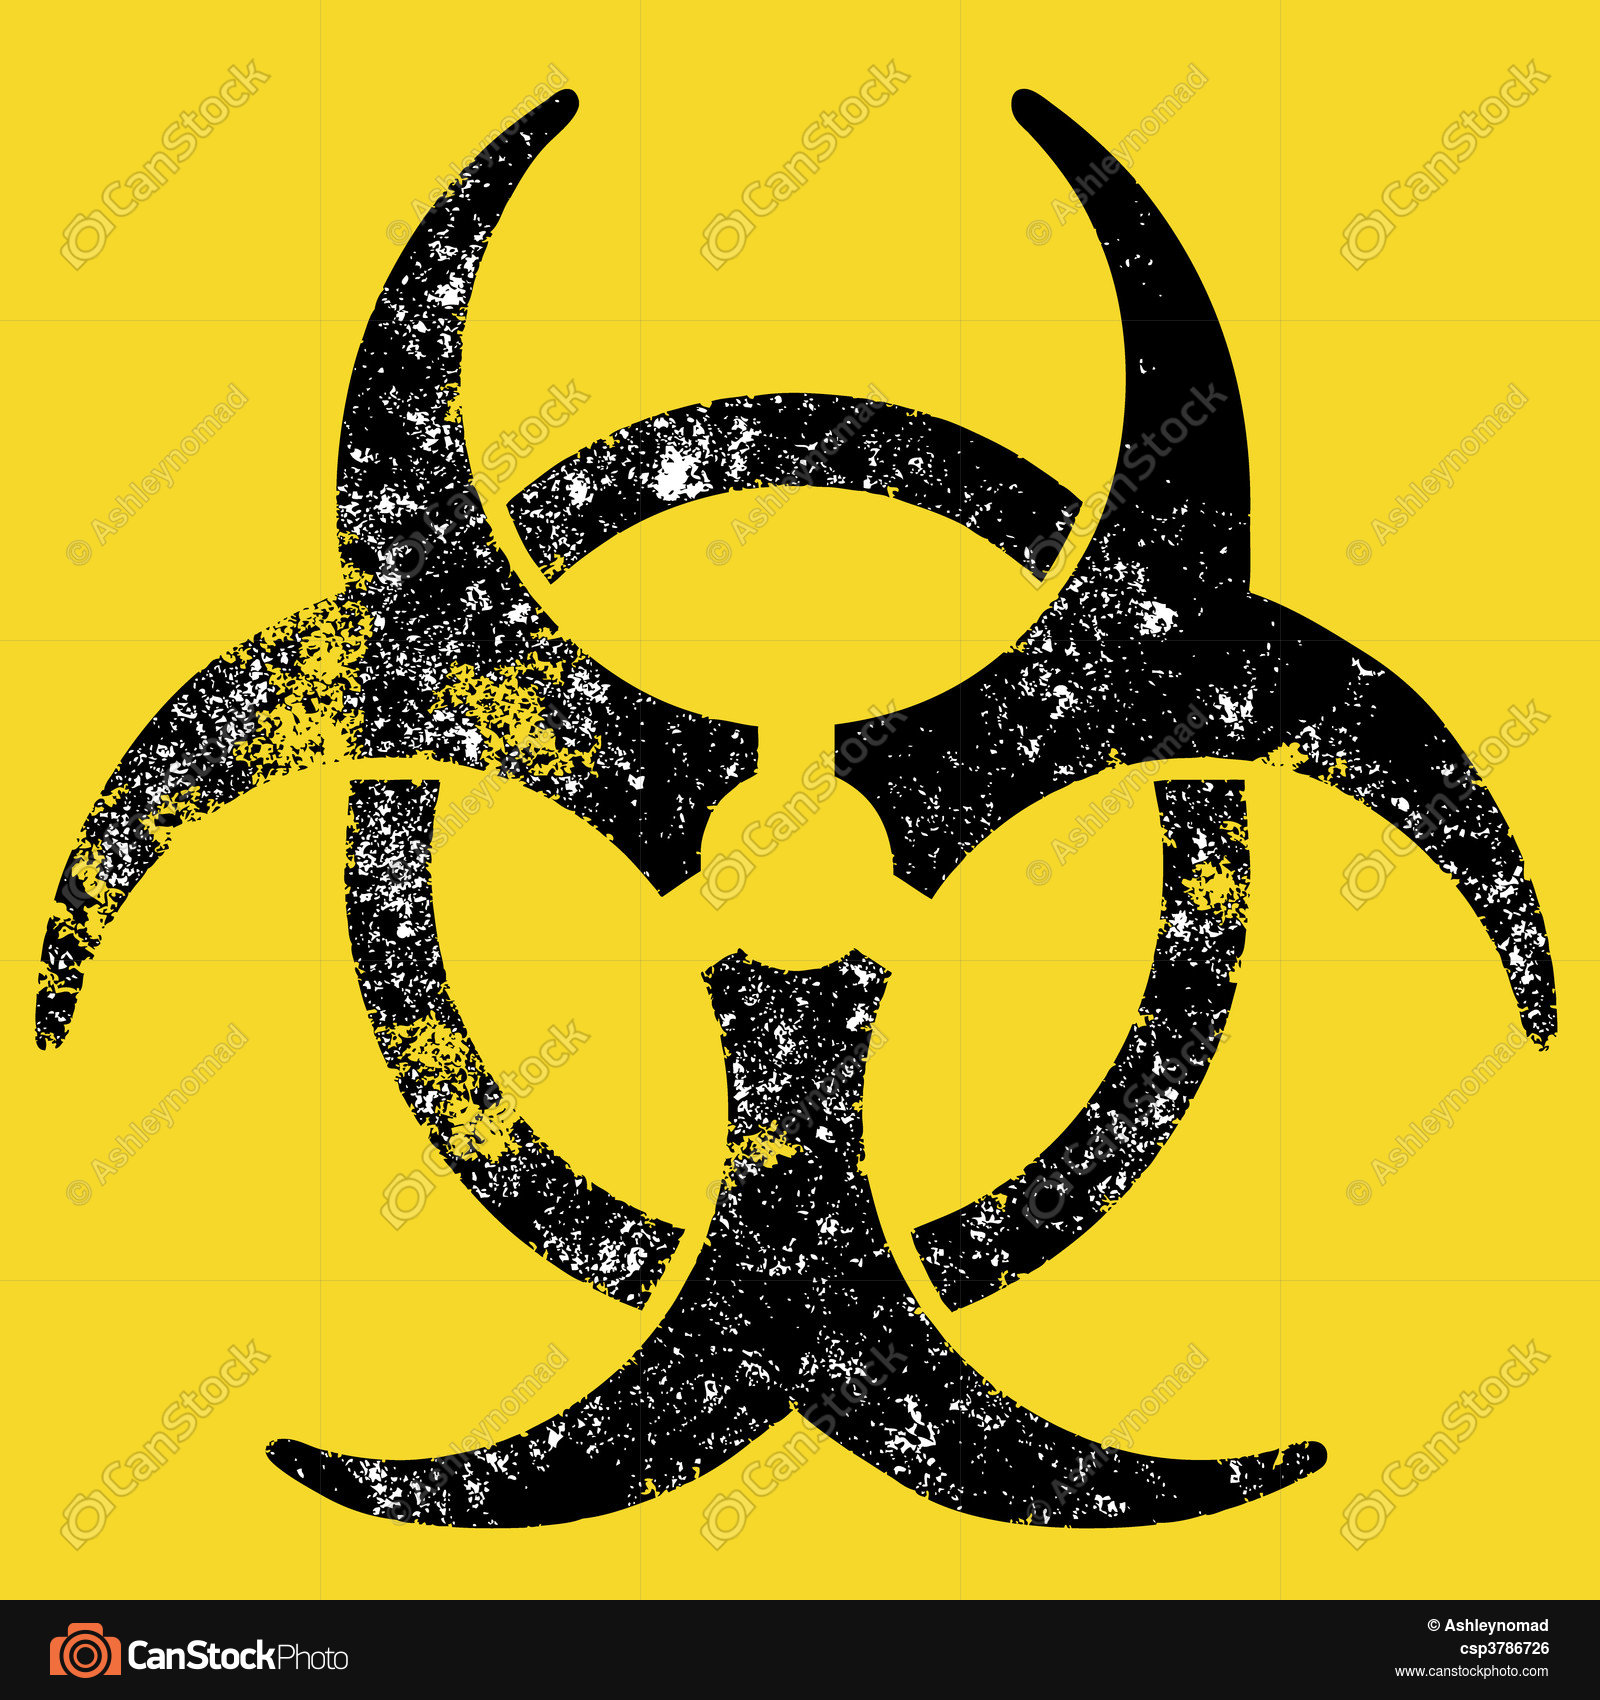 Grunge biohazard sign. A grunge destroyed biohazard sign clip art ...